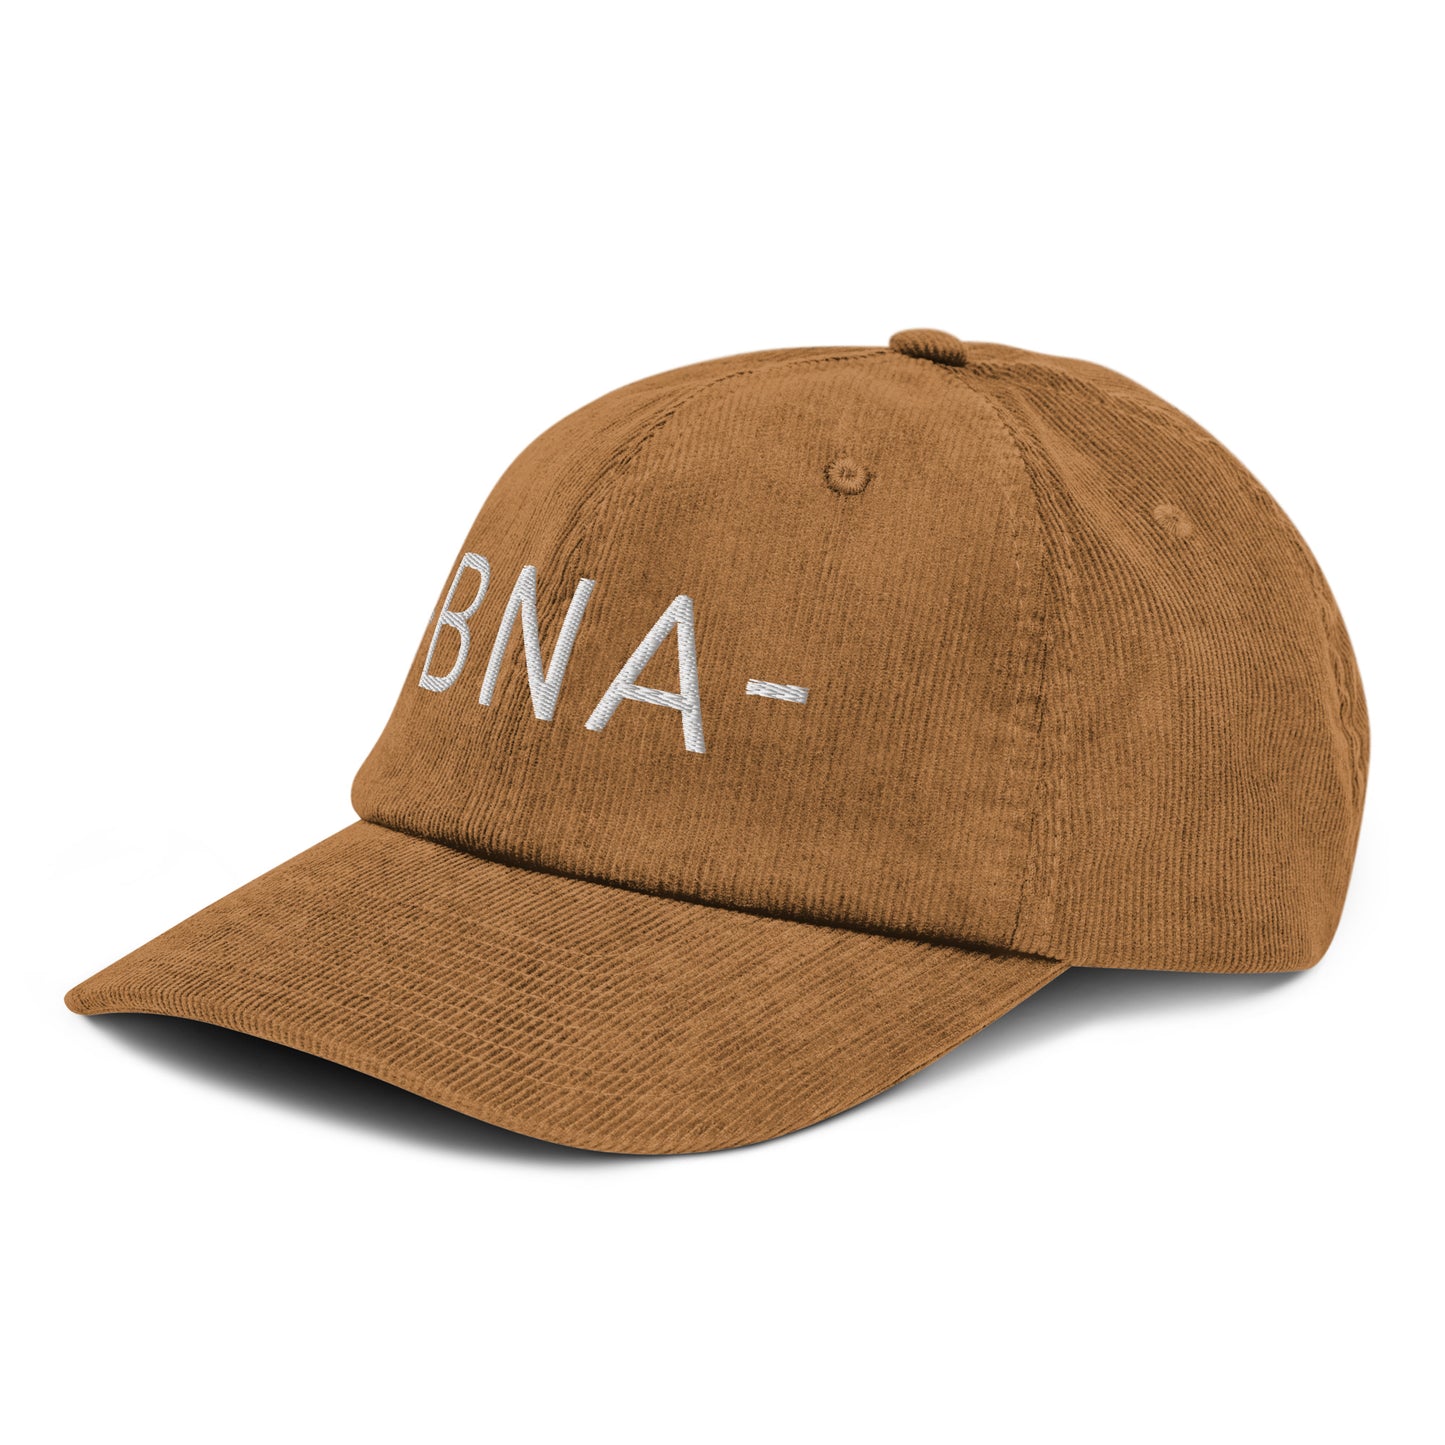 Souvenir Corduroy Hat - White • BNA Nashville • YHM Designs - Image 19